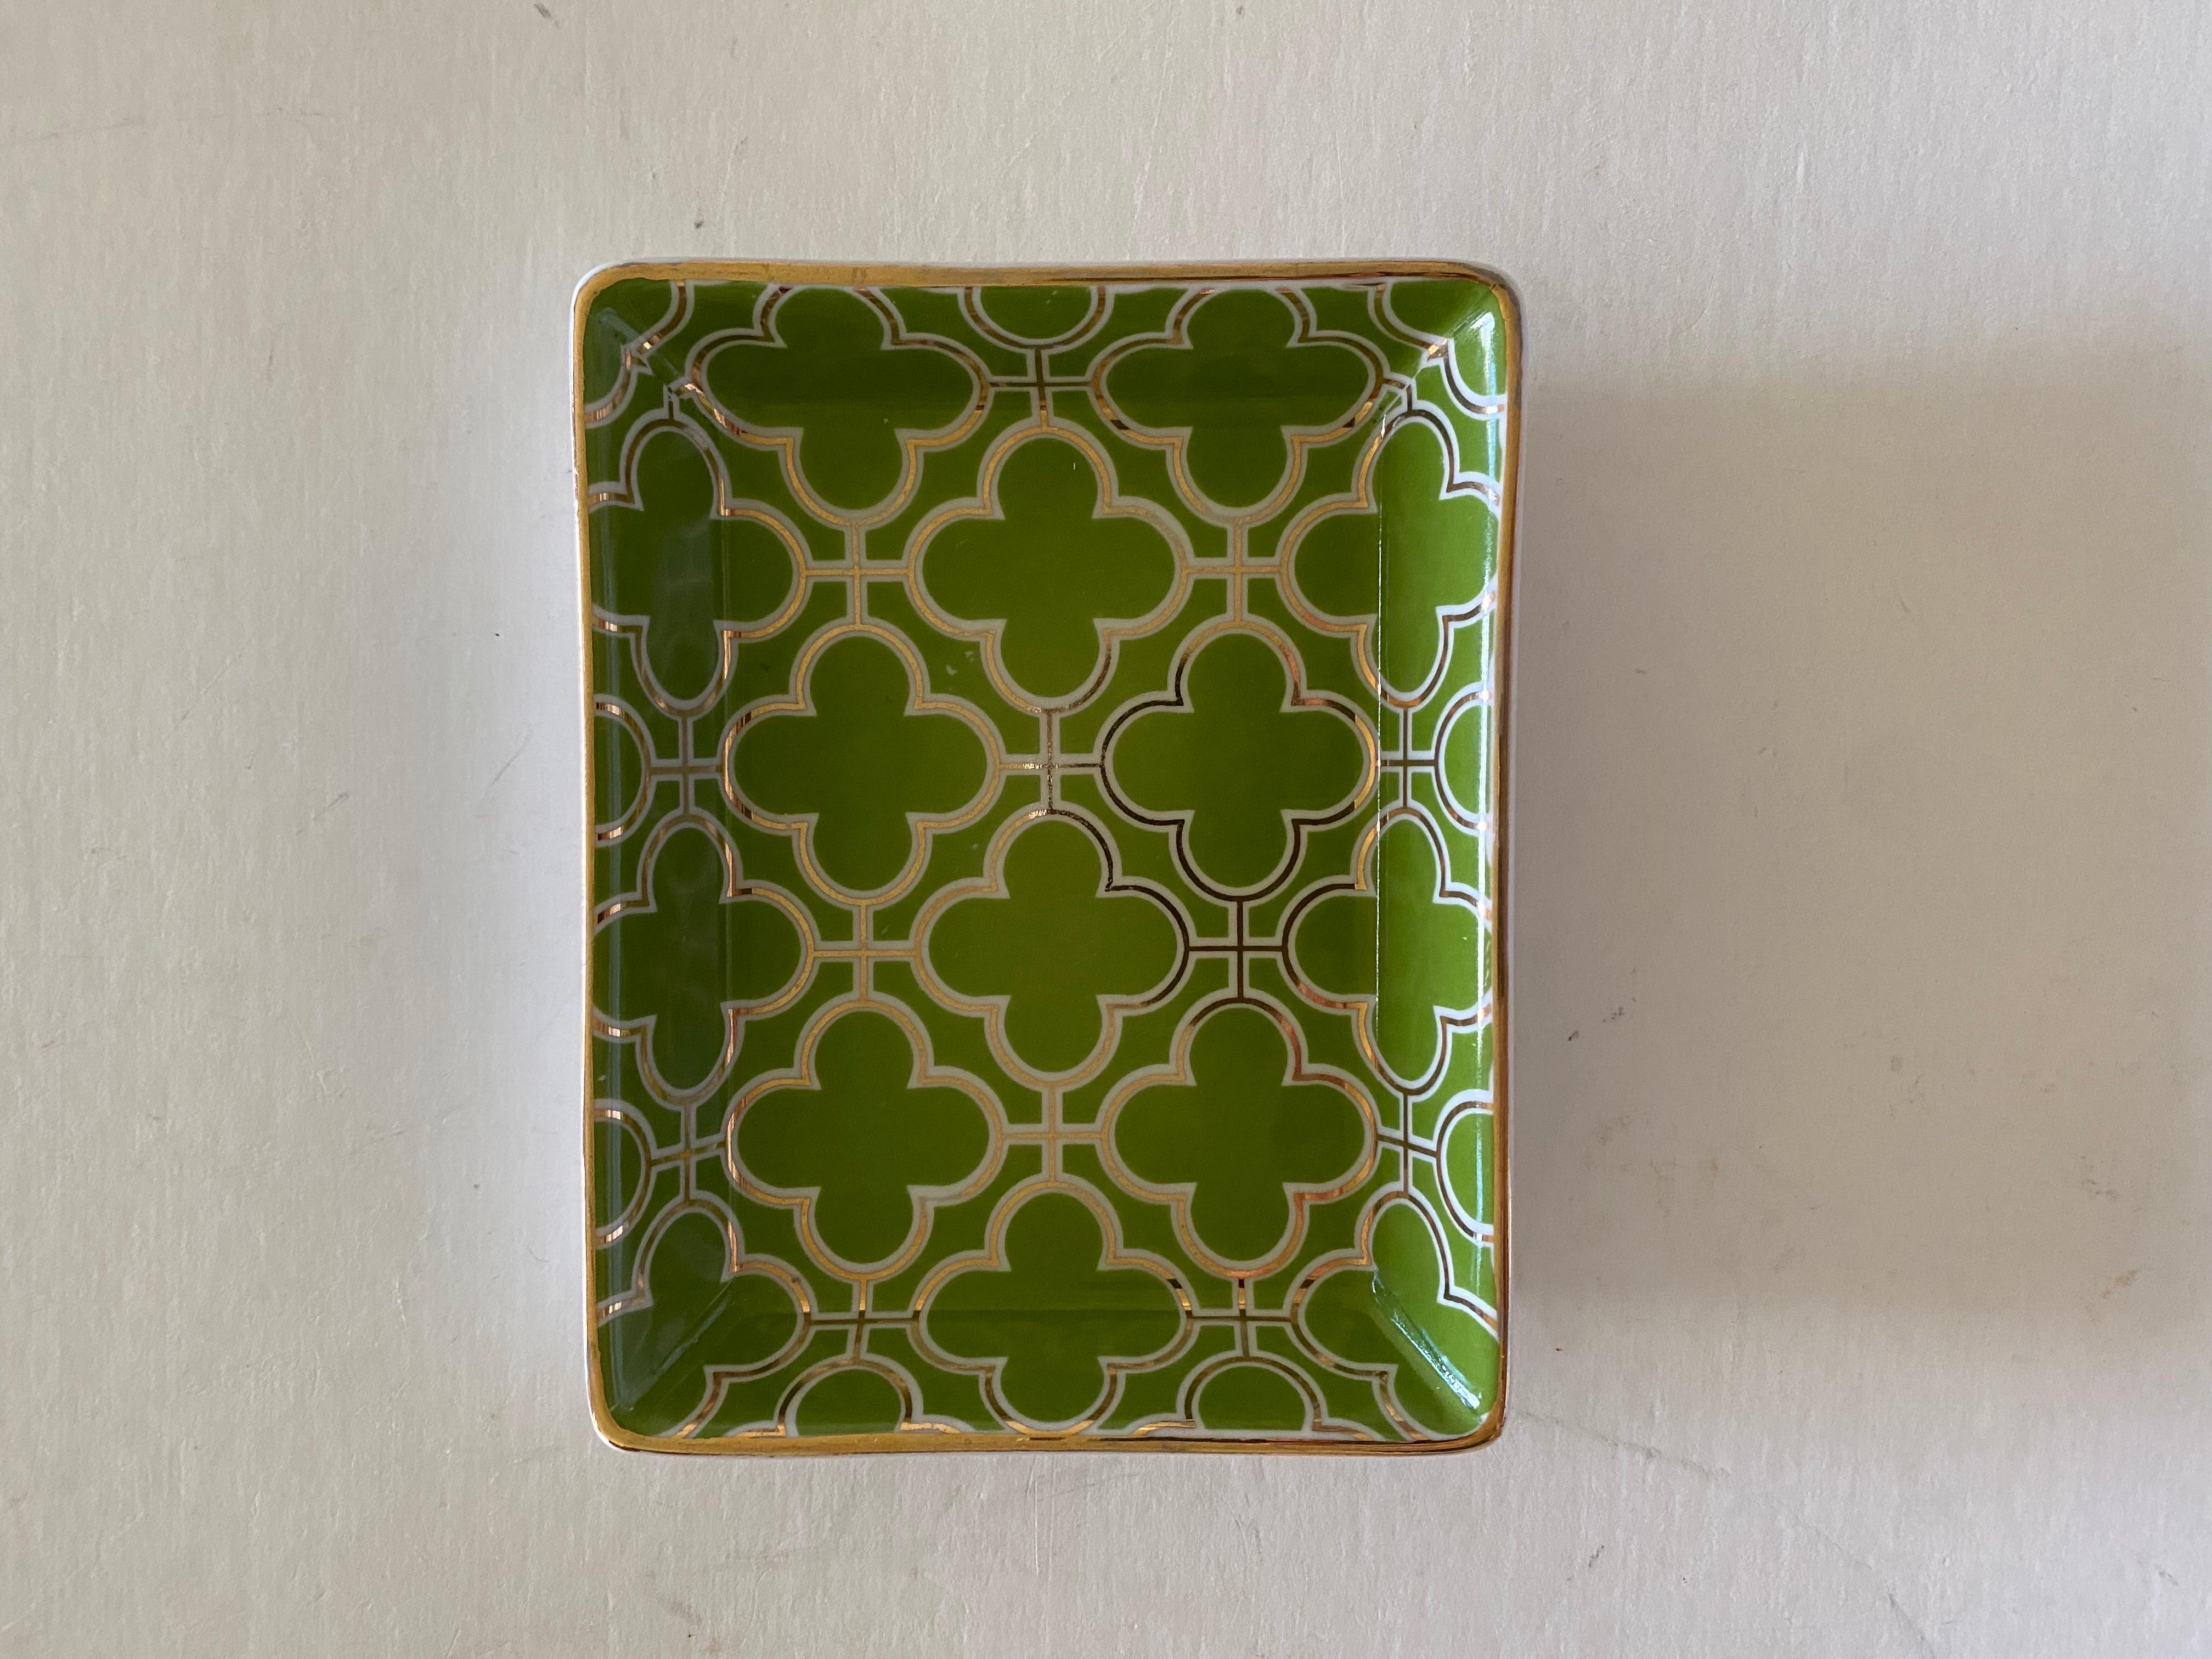 Keramikschale von Godinger & Company im Hollywood-Regency-Stil mit hellgrünem und weißem geometrischem Muster, akzentuiert durch einen Goldrand.

Eine vielseitige Größe, die sich ideal als Seifenschale oder Schlüssel-/Schmuckablage verwenden